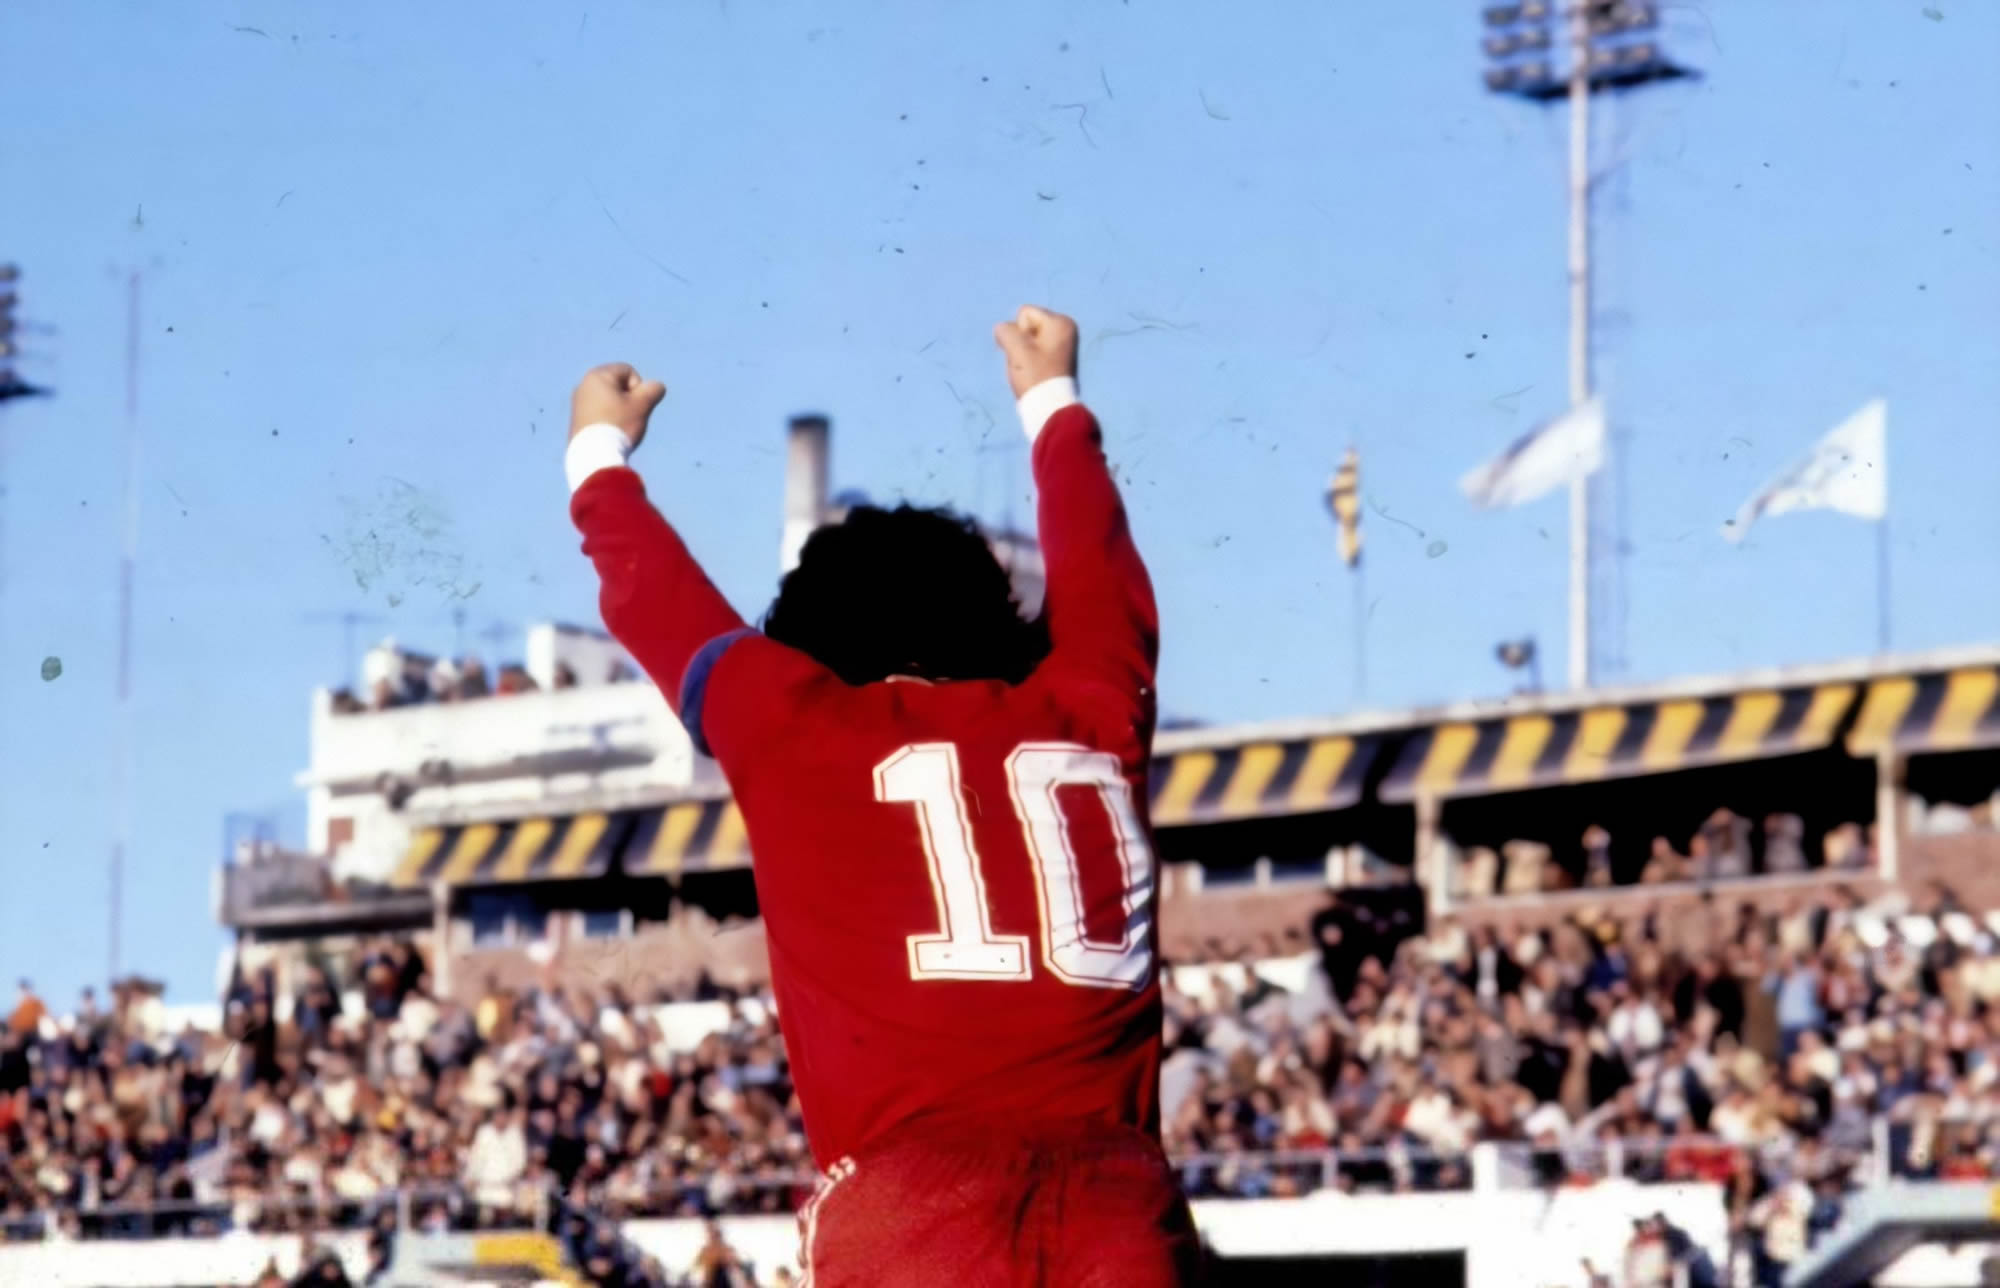 La historia de Maradona en Argentinos Juniors: El inicio de una leyenda futbolística